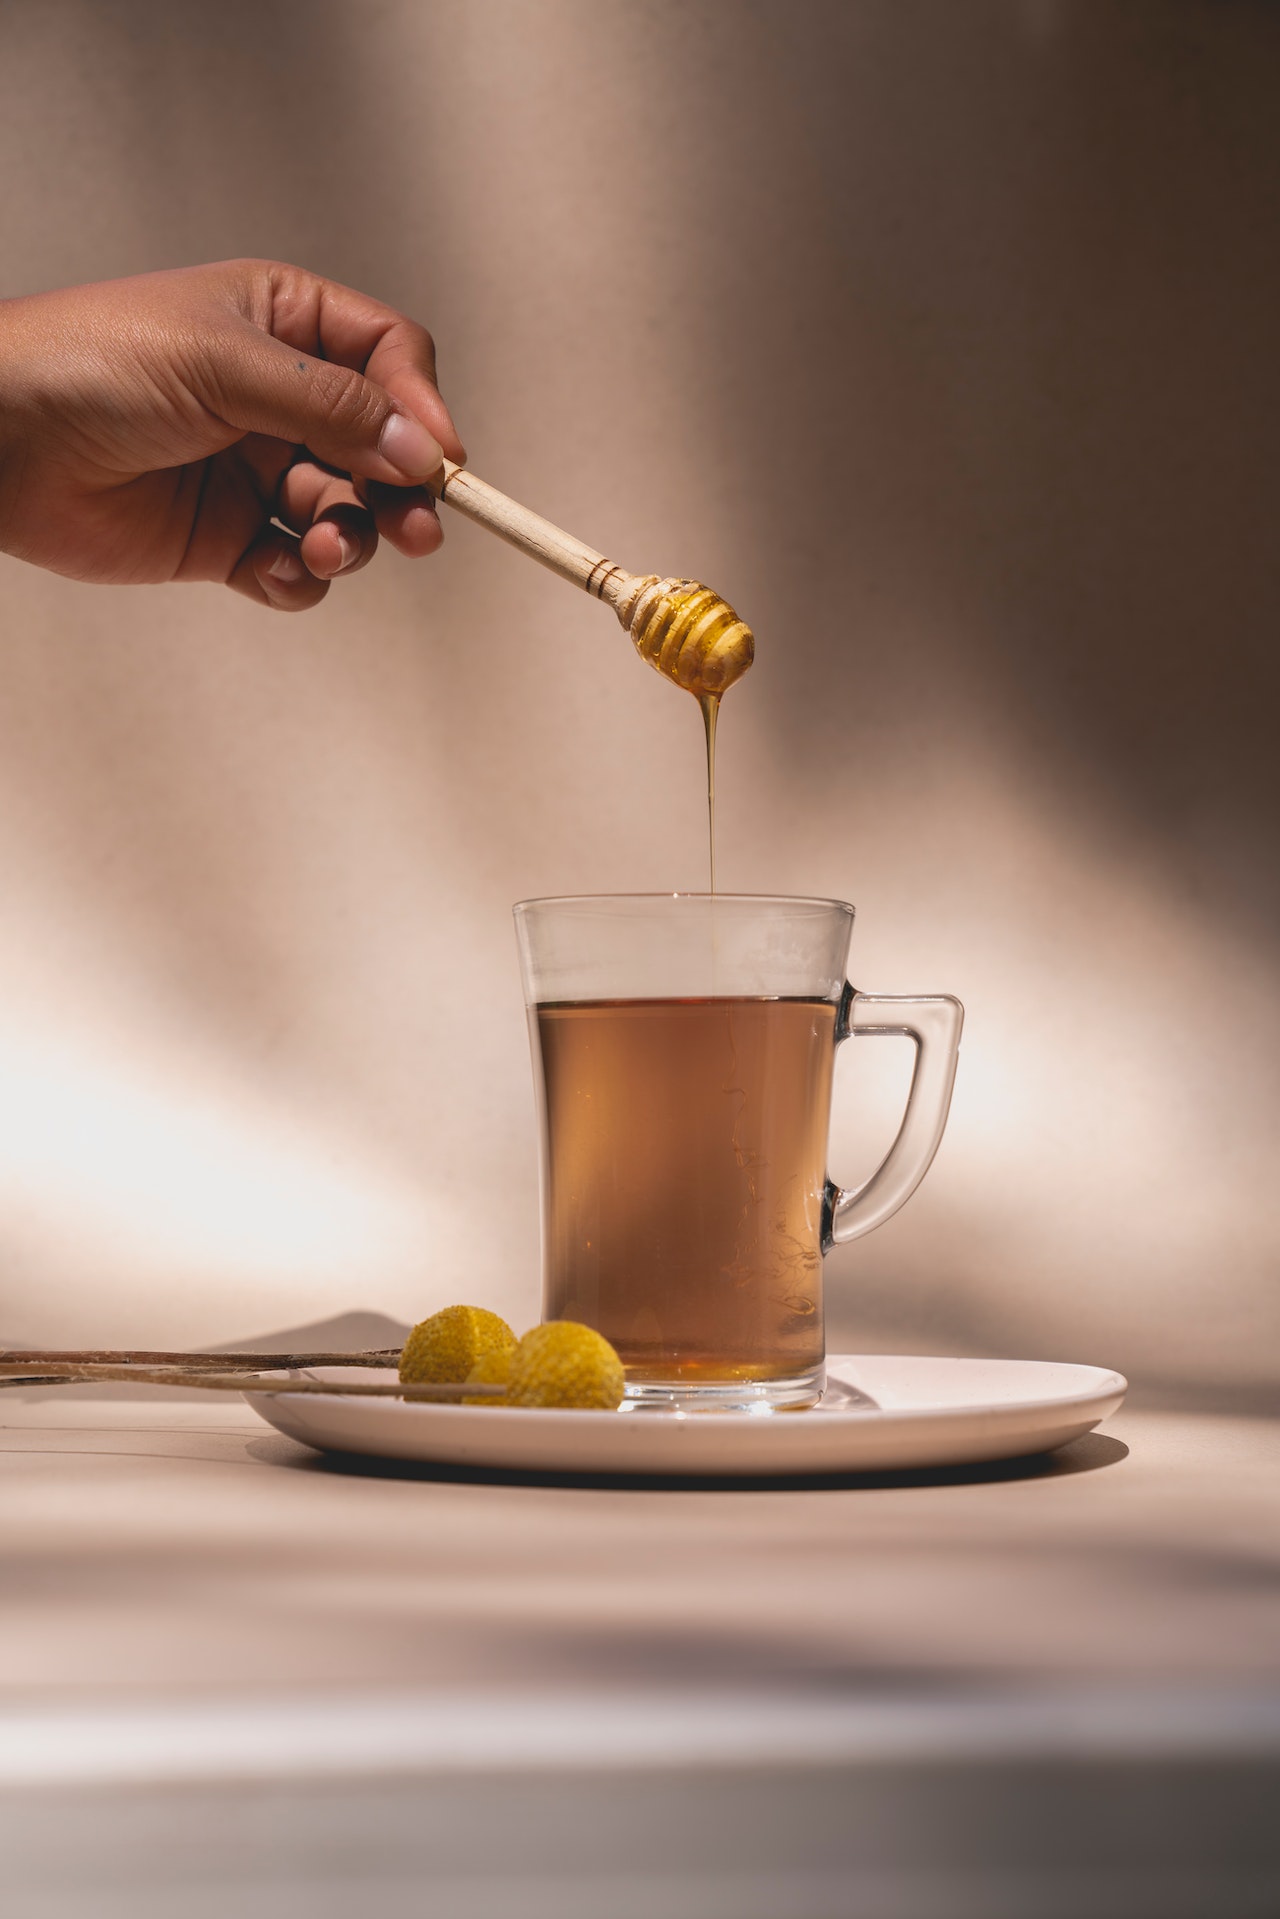 Ζεστό νερό με μέλι: Το ρόφημα που καθαρίζει και αναζωογονεί το σώμα σου, χαρίζοντας πιο υγιές δέρμα